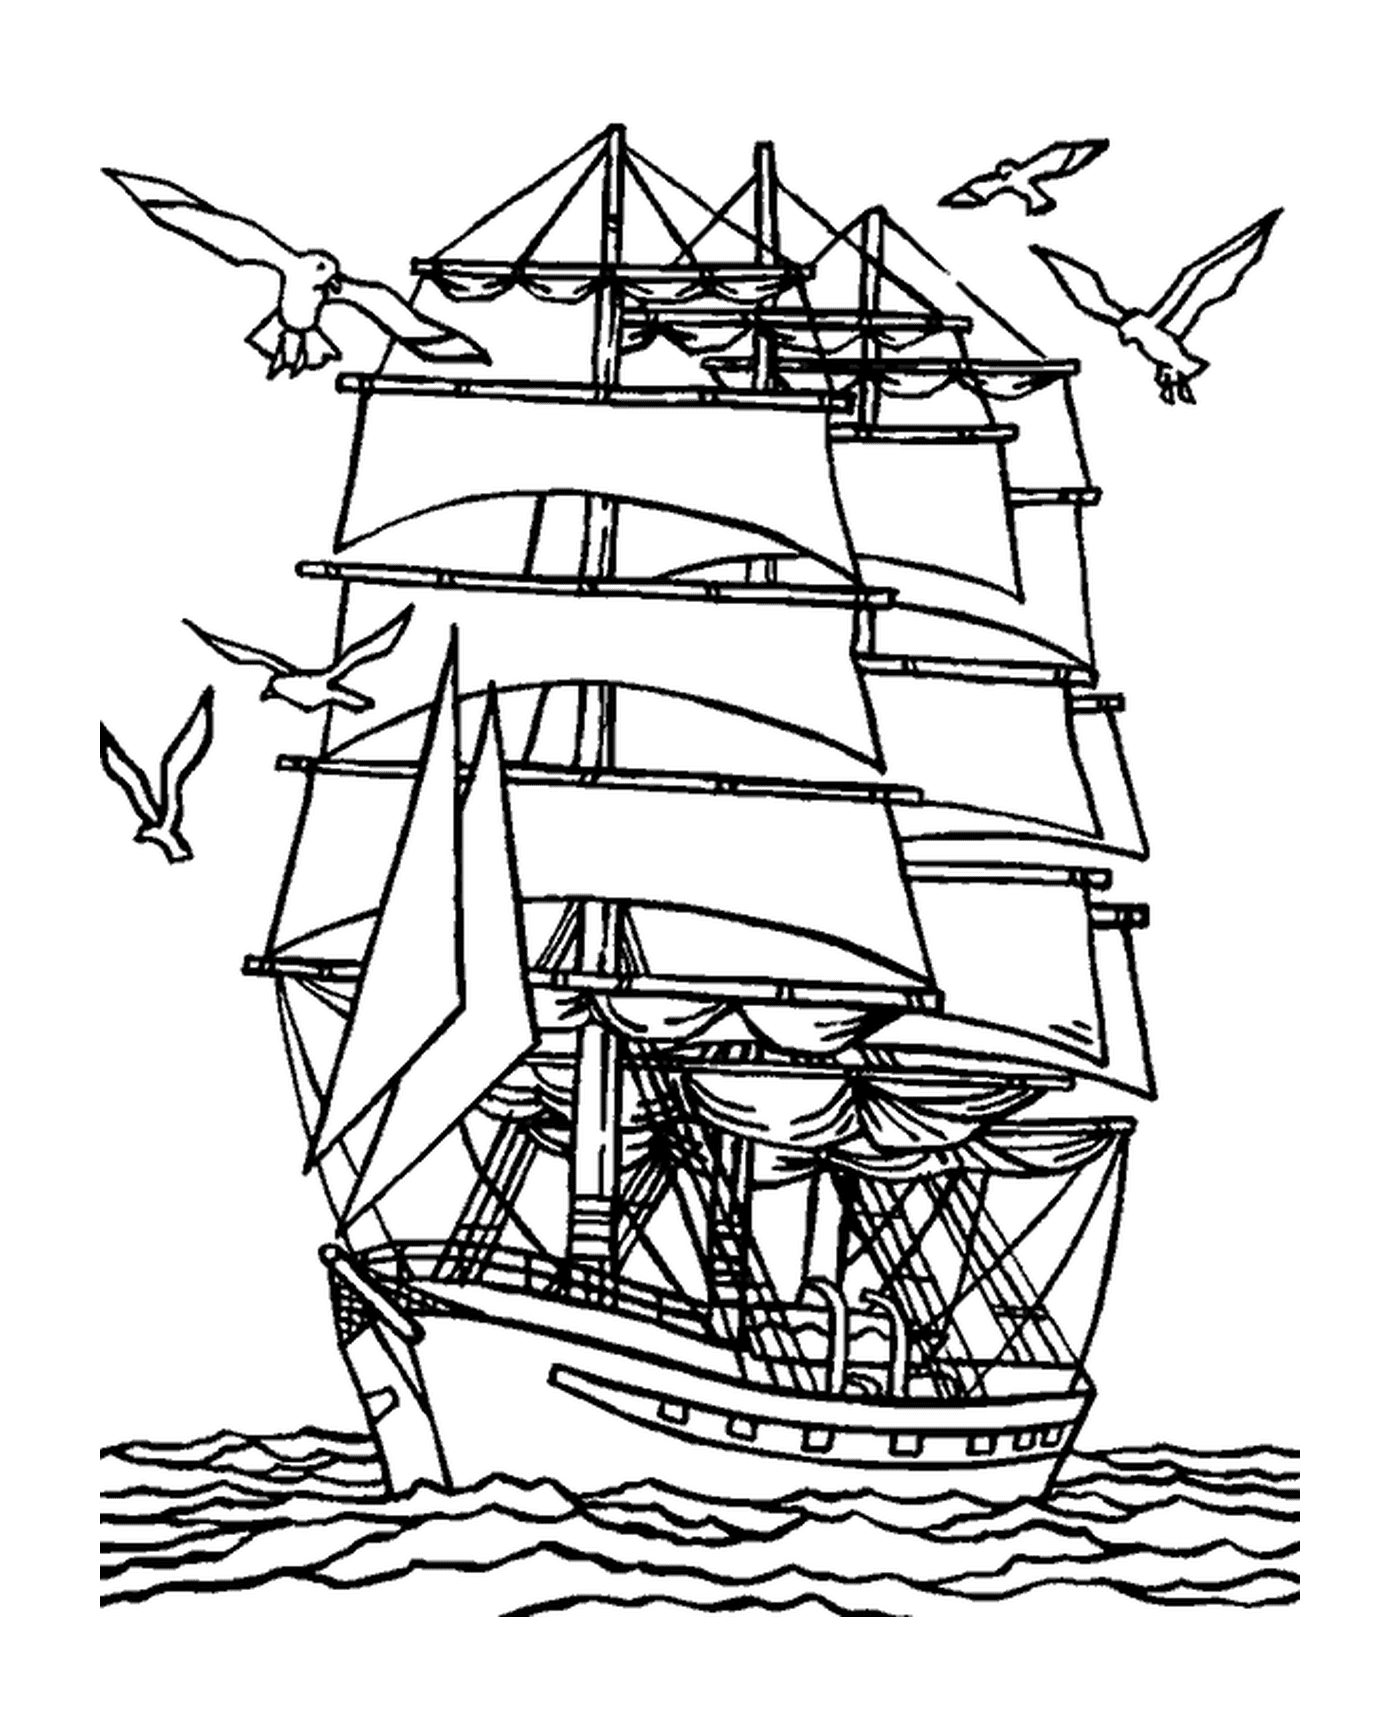  Um navio perto da costa com gaivotas 